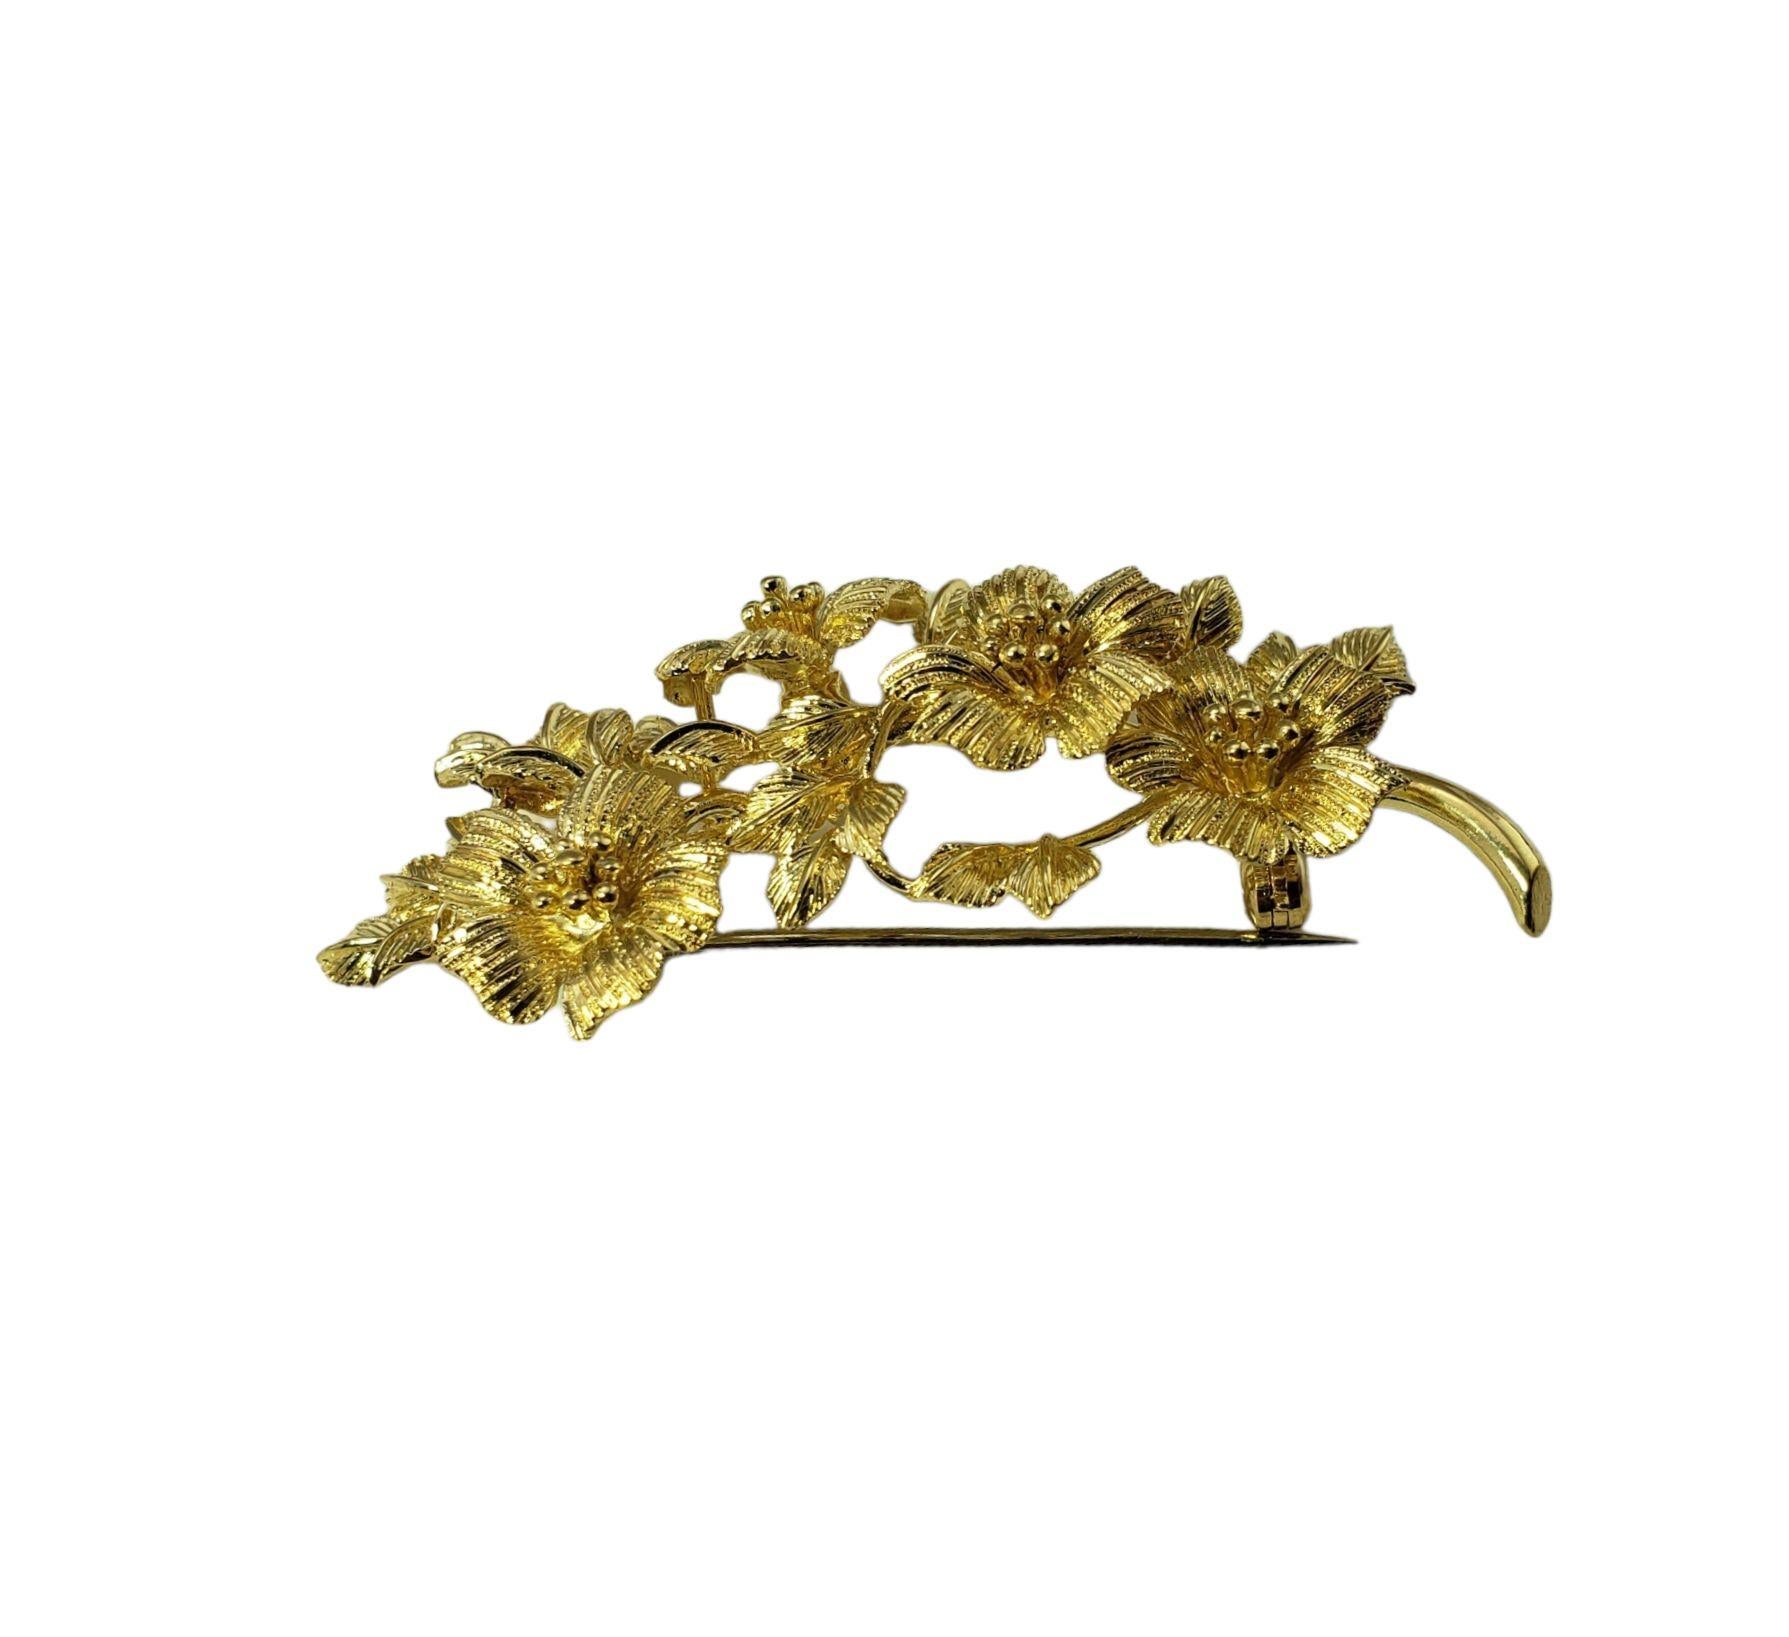 Vintage Tiffany & Co. Broche fleurie en or jaune 18 carats-.

Cette étonnante broche en or jaune 18 carats de Tiffany & Co. est méticuleusement détaillée dans un joli motif floral.

Taille : 59 mm x 36 mm

Poids : 10,9 dwt. / 17.0gr.

Estampillé :